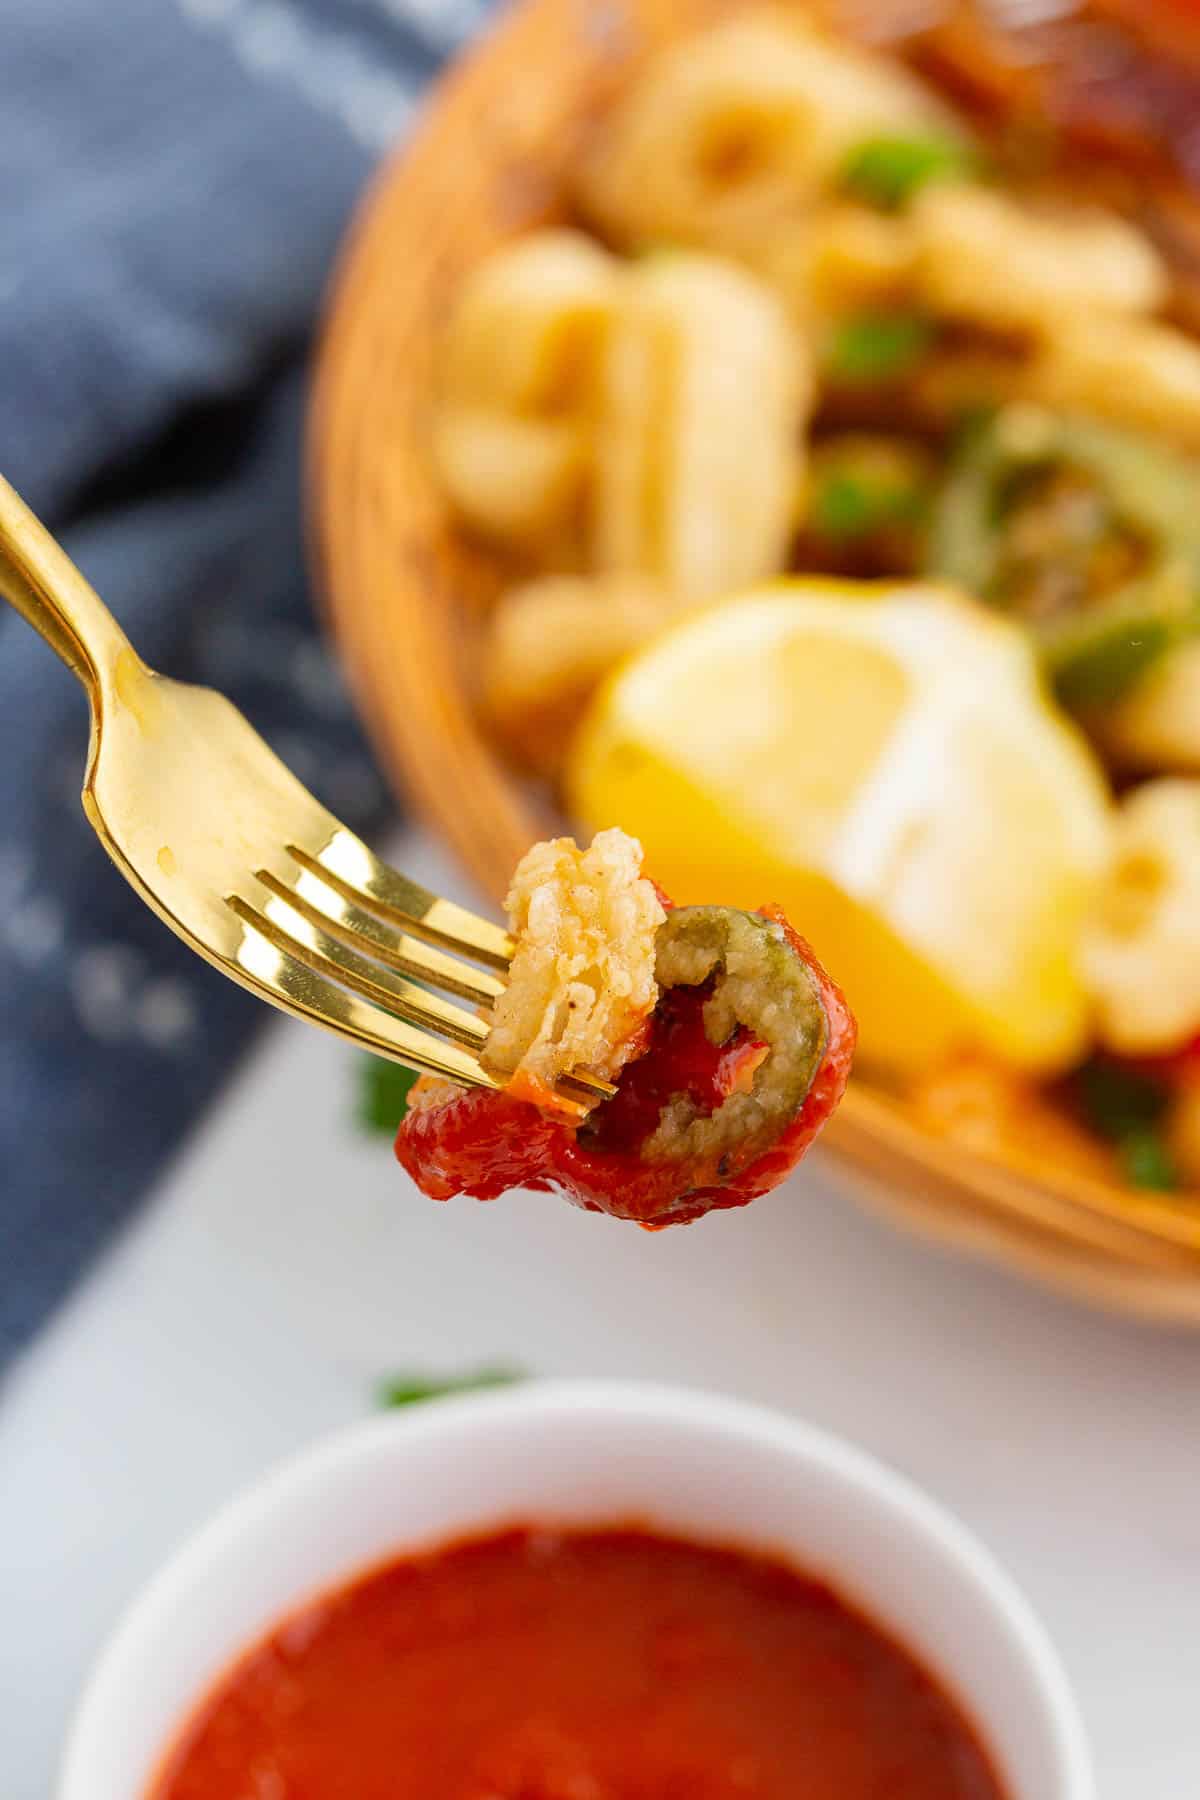 Calamari rings on fork dipped in marinara sauce.